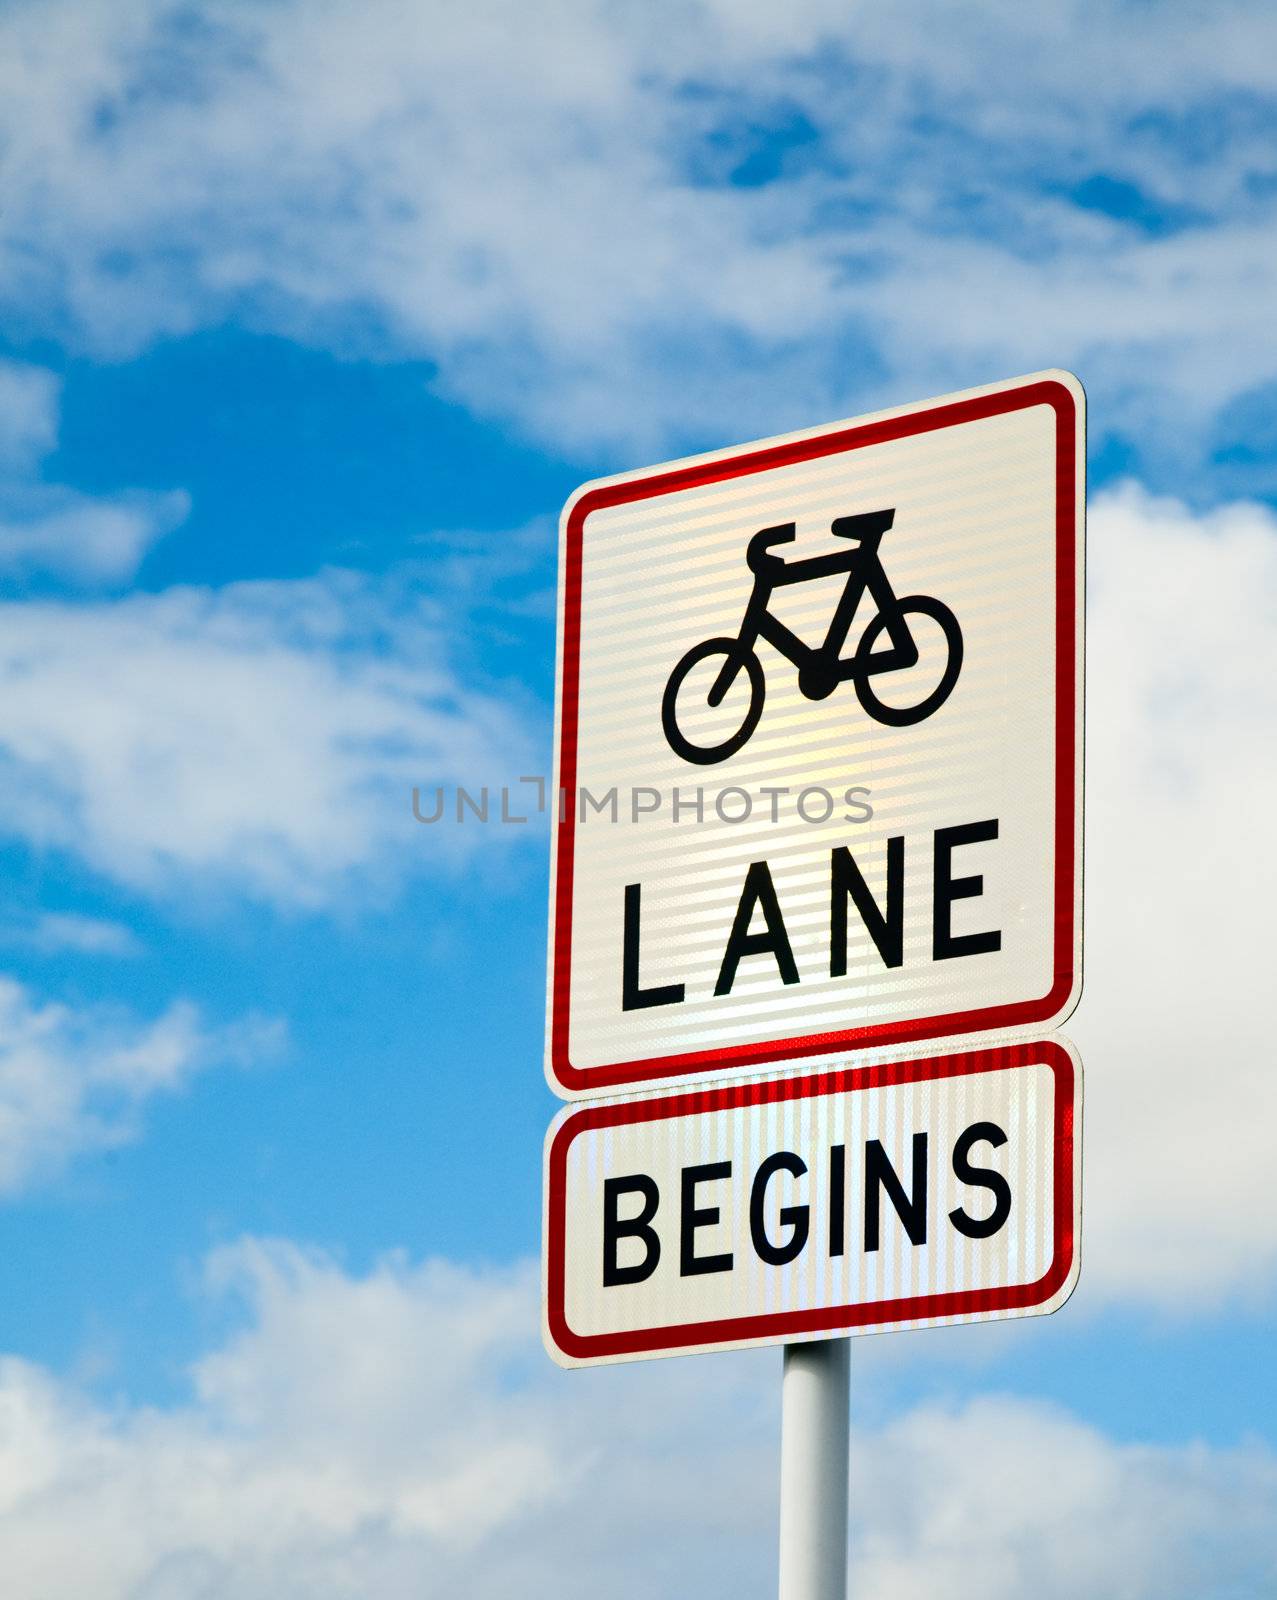 Bike lane begins by naumoid